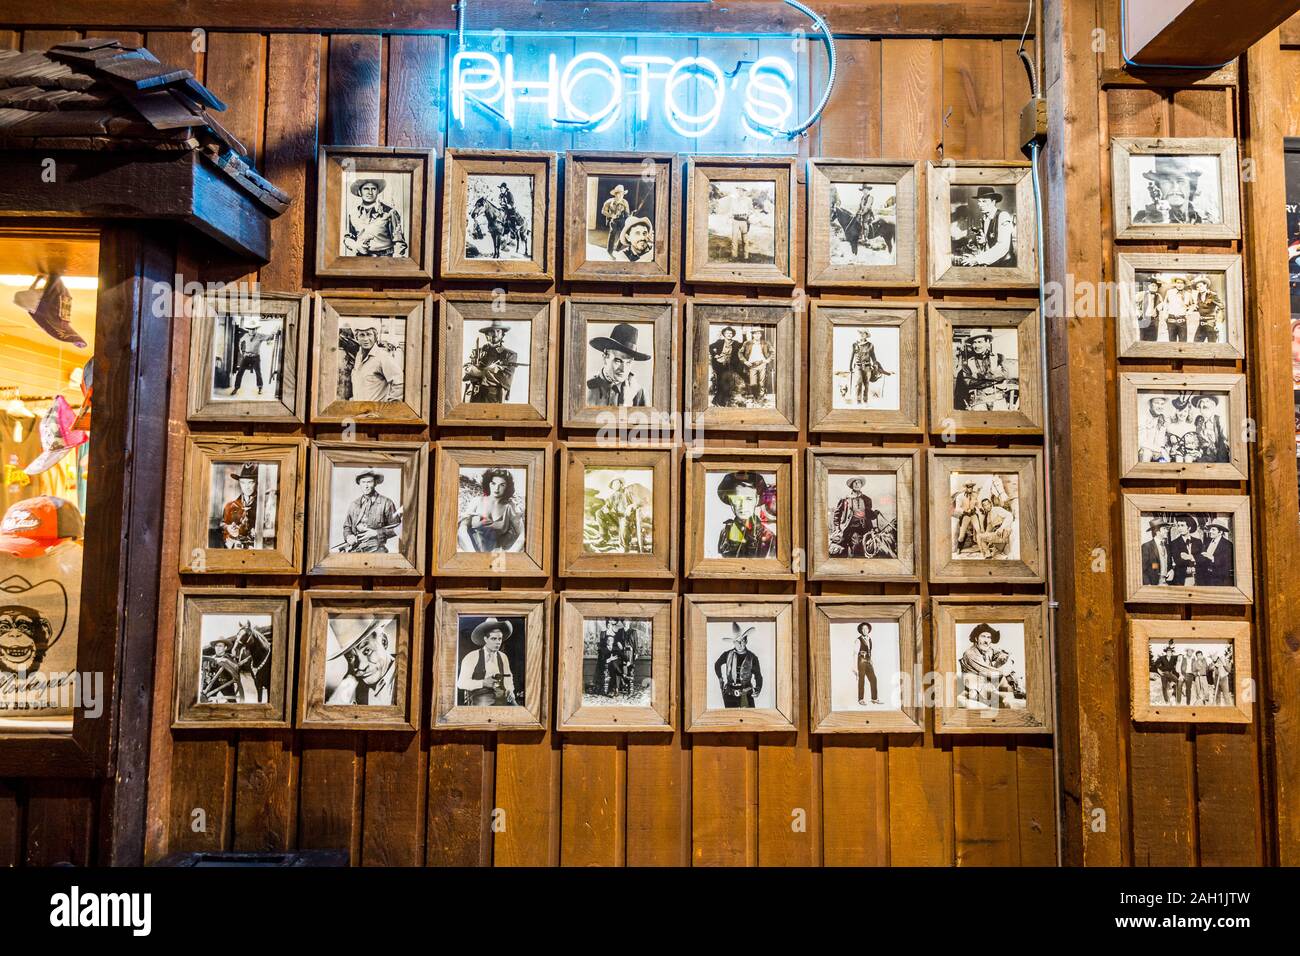 Les intérieurs de restaurants et bars avec un tas de photos de célébrités à la Fort Worth Stockyards, un quartier historique qui est située à Fort Wor Banque D'Images